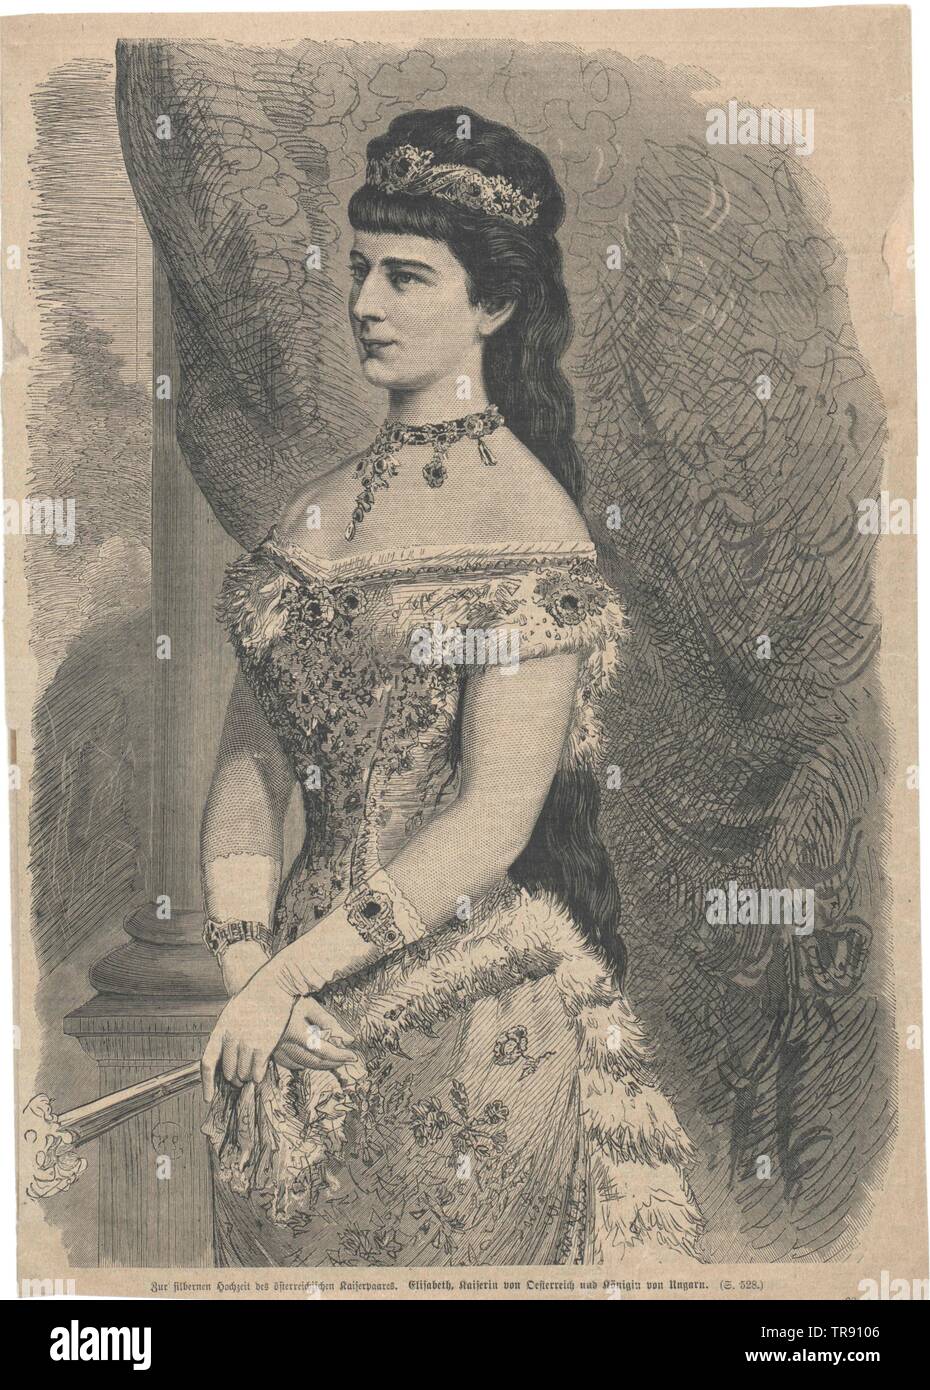 Elisabeth, Kaiserin von Österreich, umgekehrt gedruckten Faksimile auf Gemälde von Georg Raab, 1878, aus Anlass der Silbernen Hochzeit (1879),, Additional-Rights - Clearance-Info - Not-Available Stockfoto